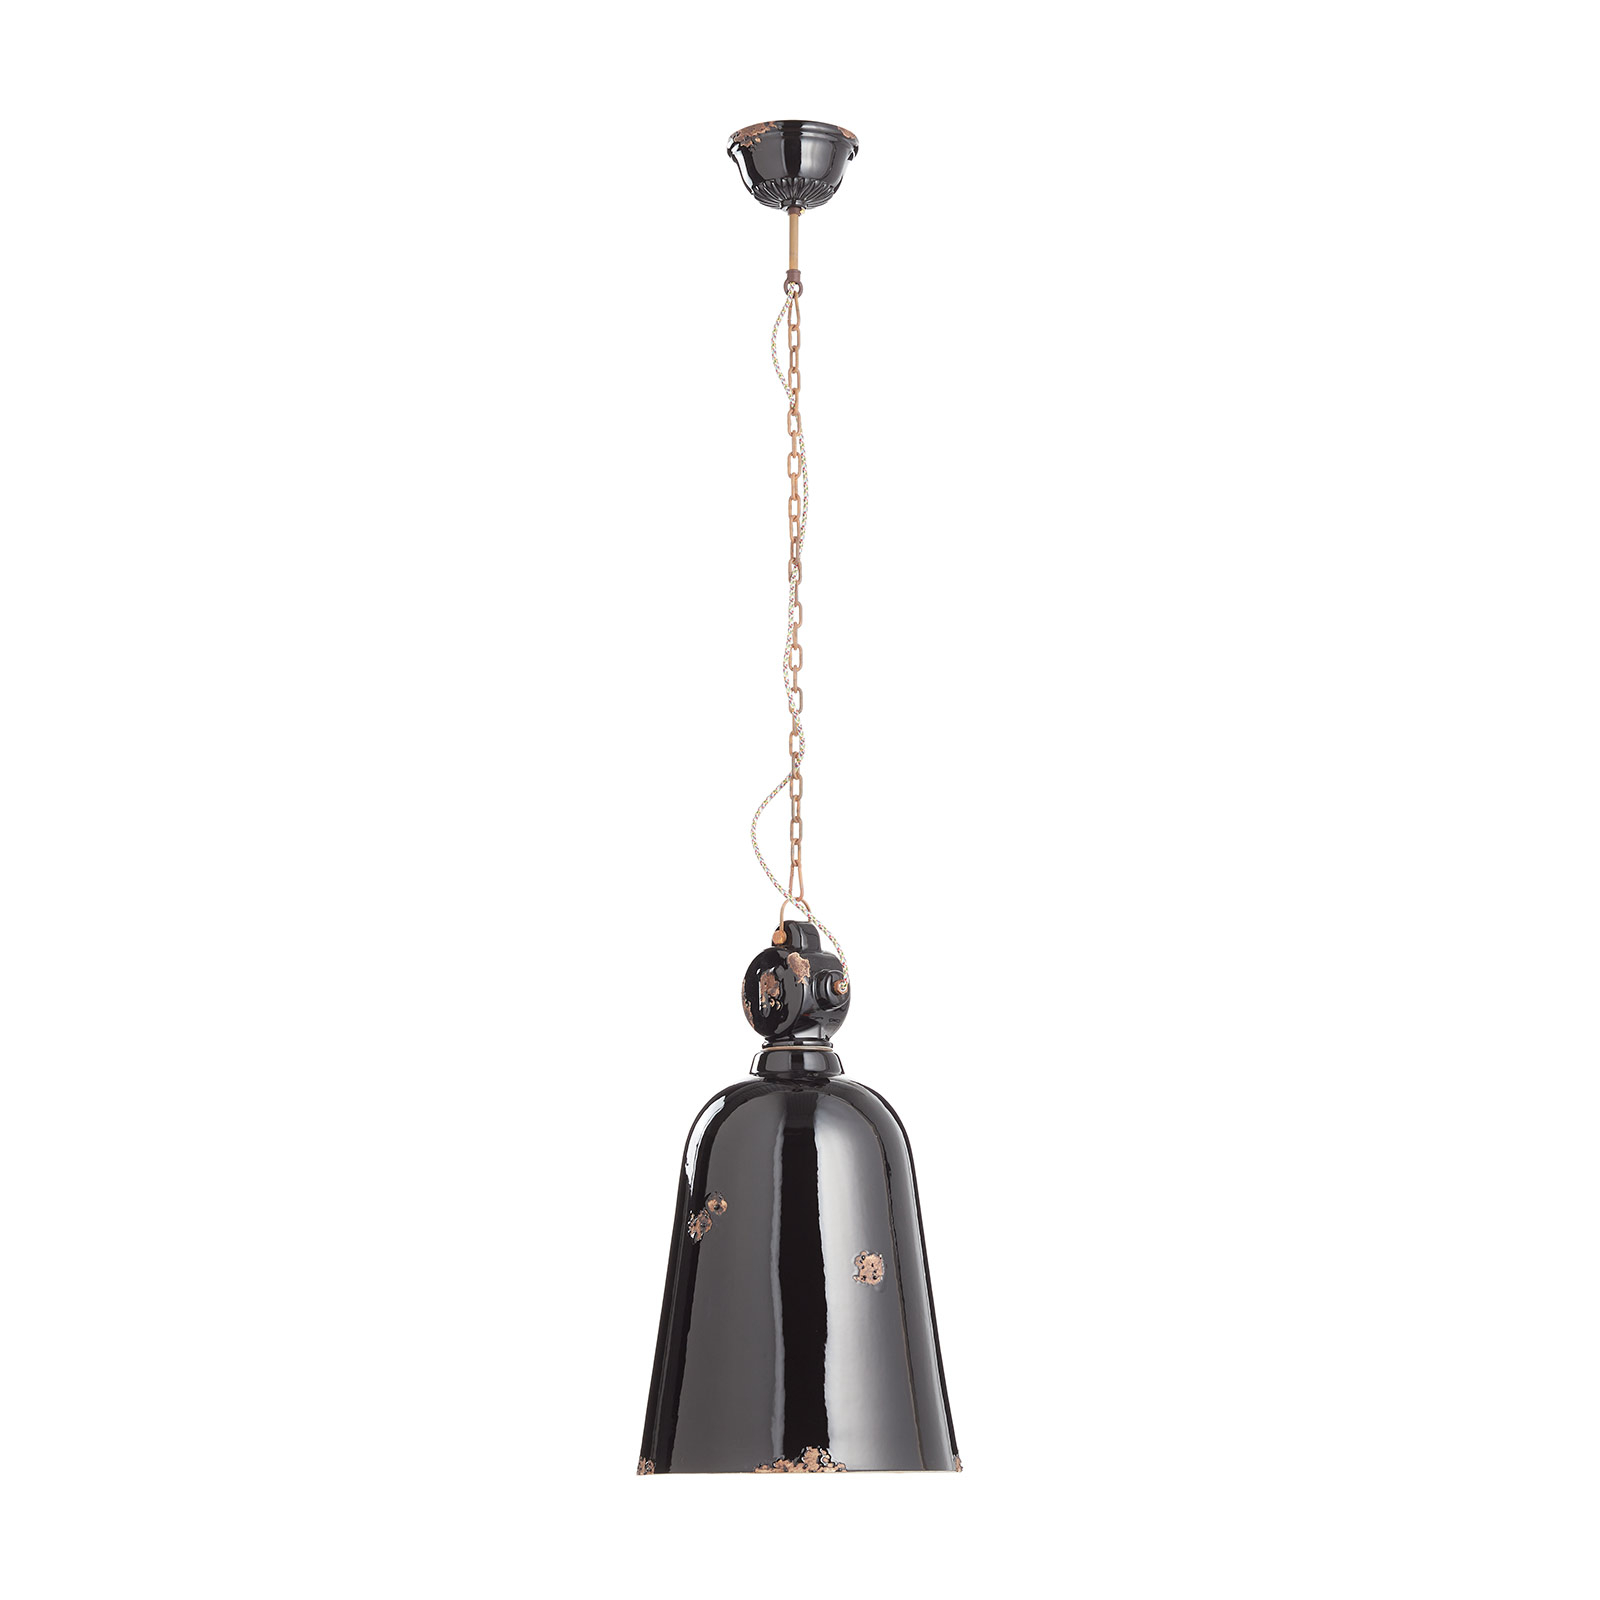 Vintage hanglamp C1745, conisch, zwart